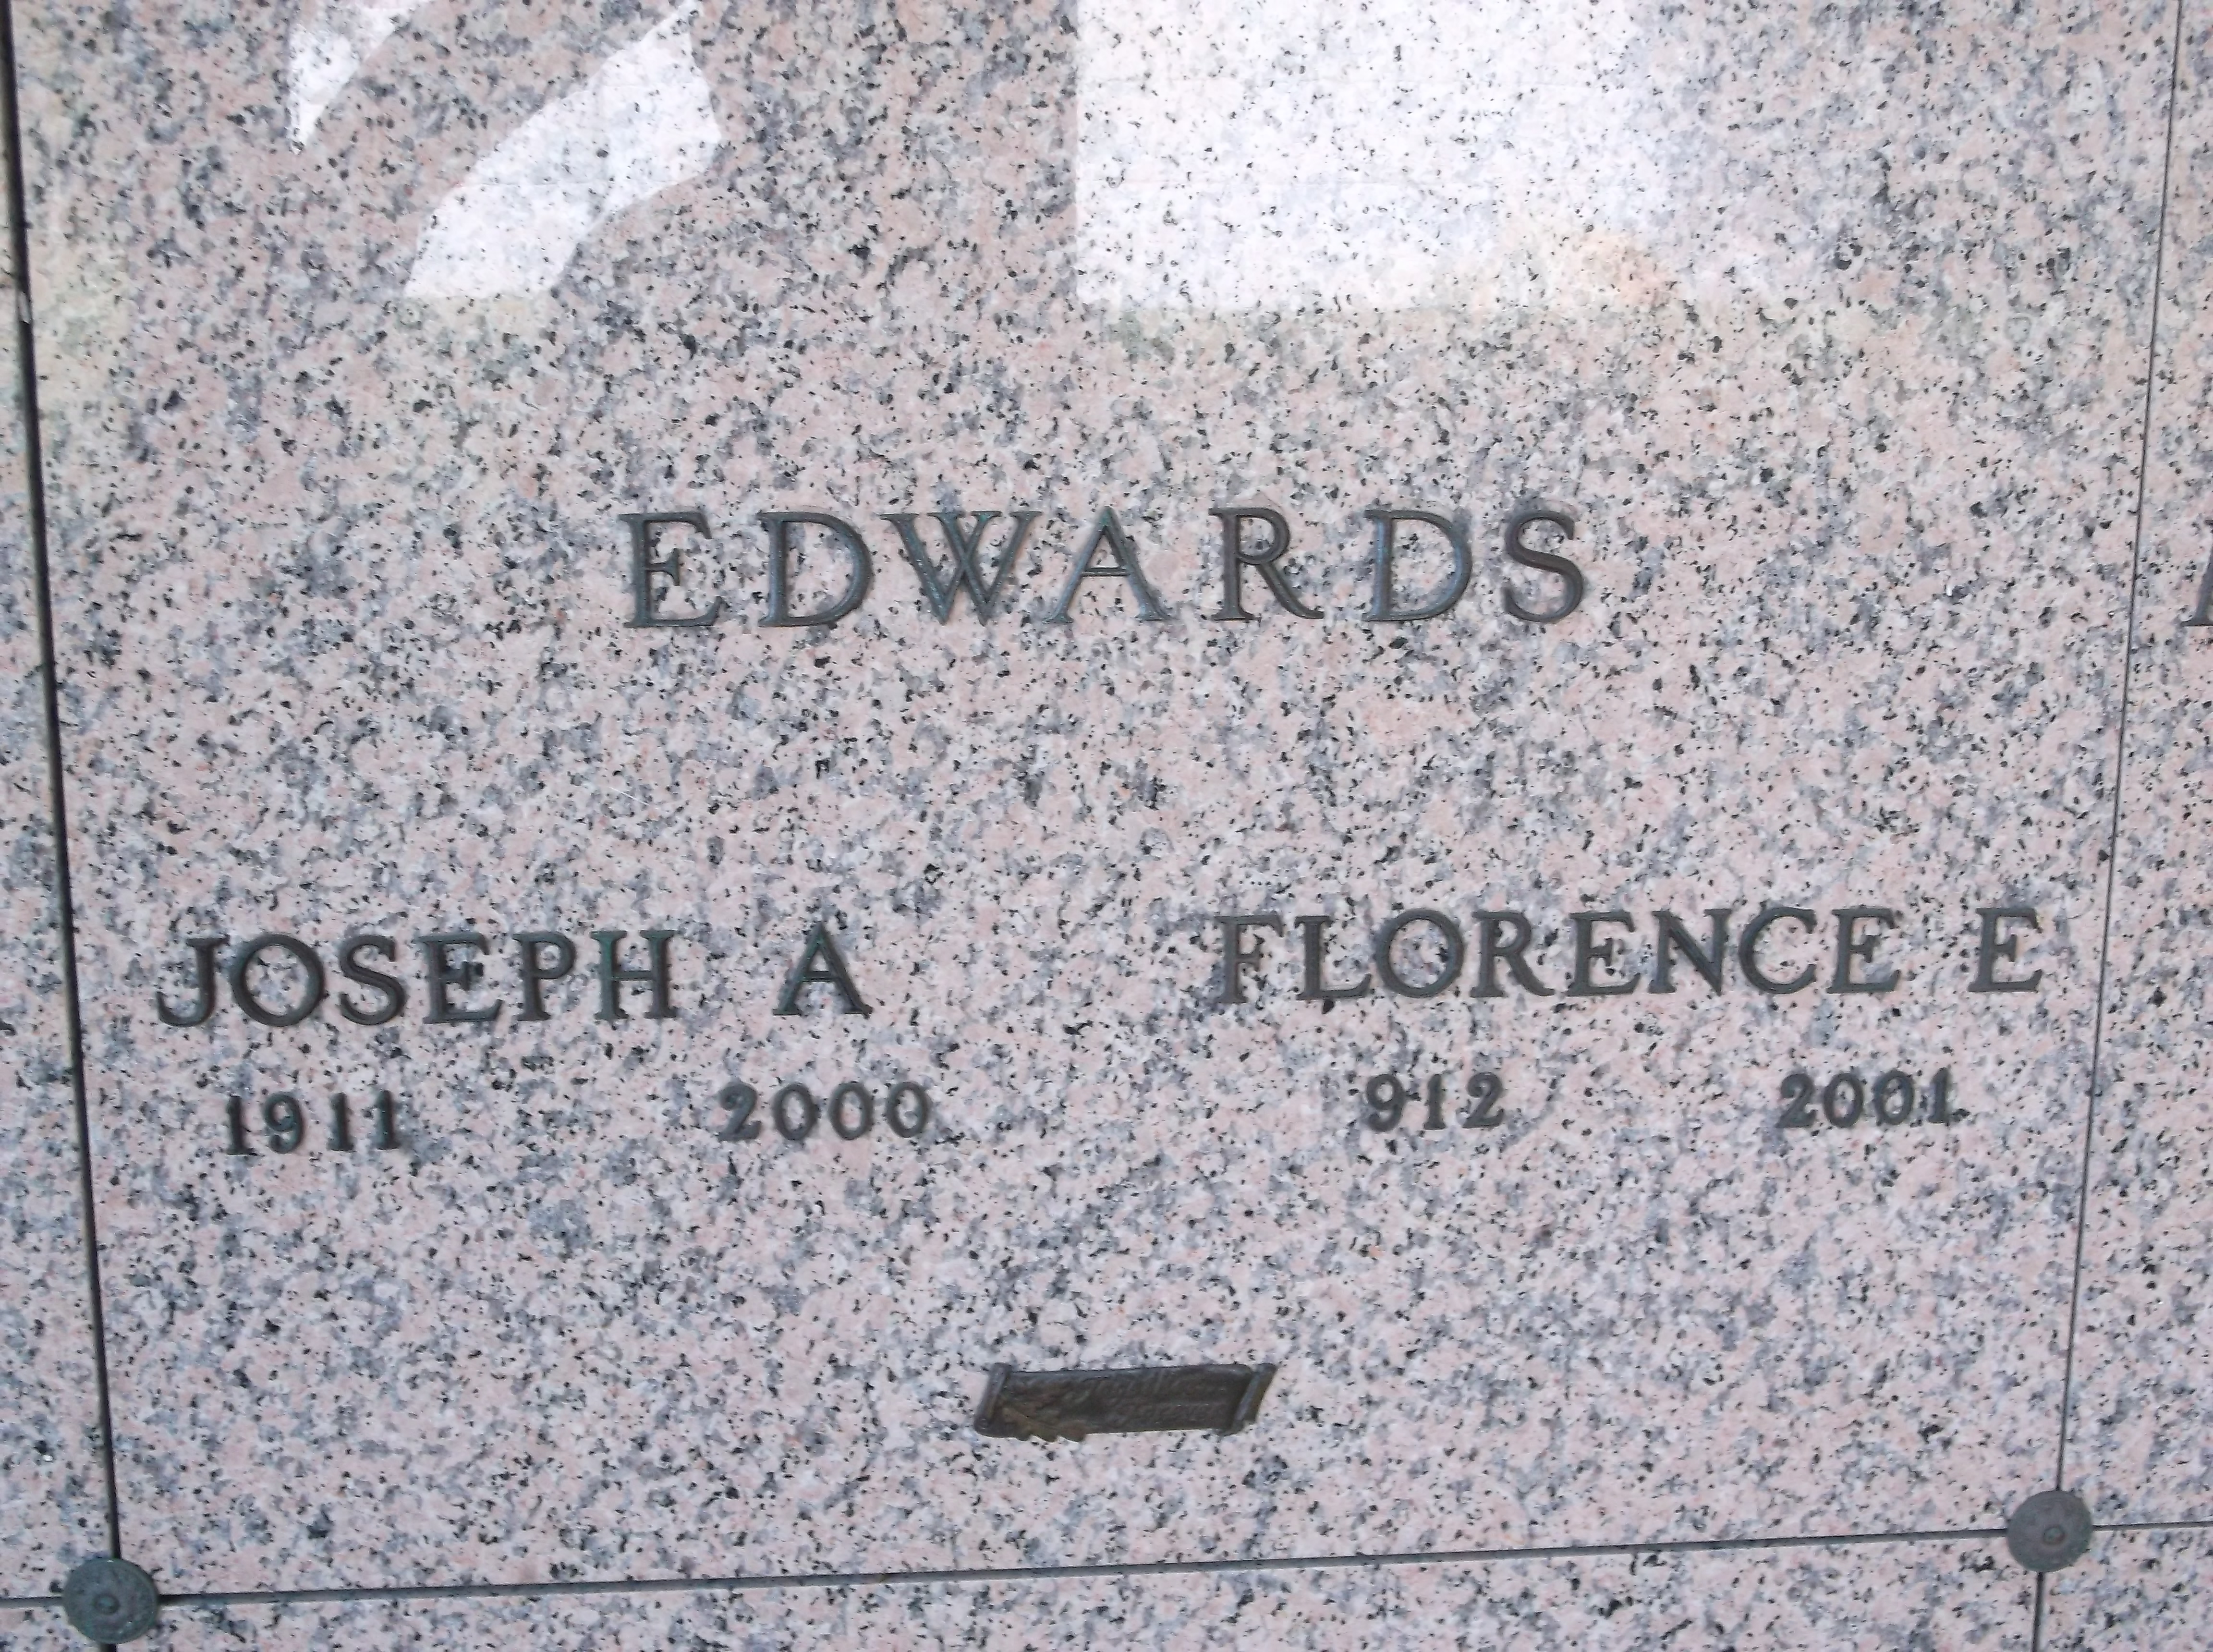 Florence E Edwards